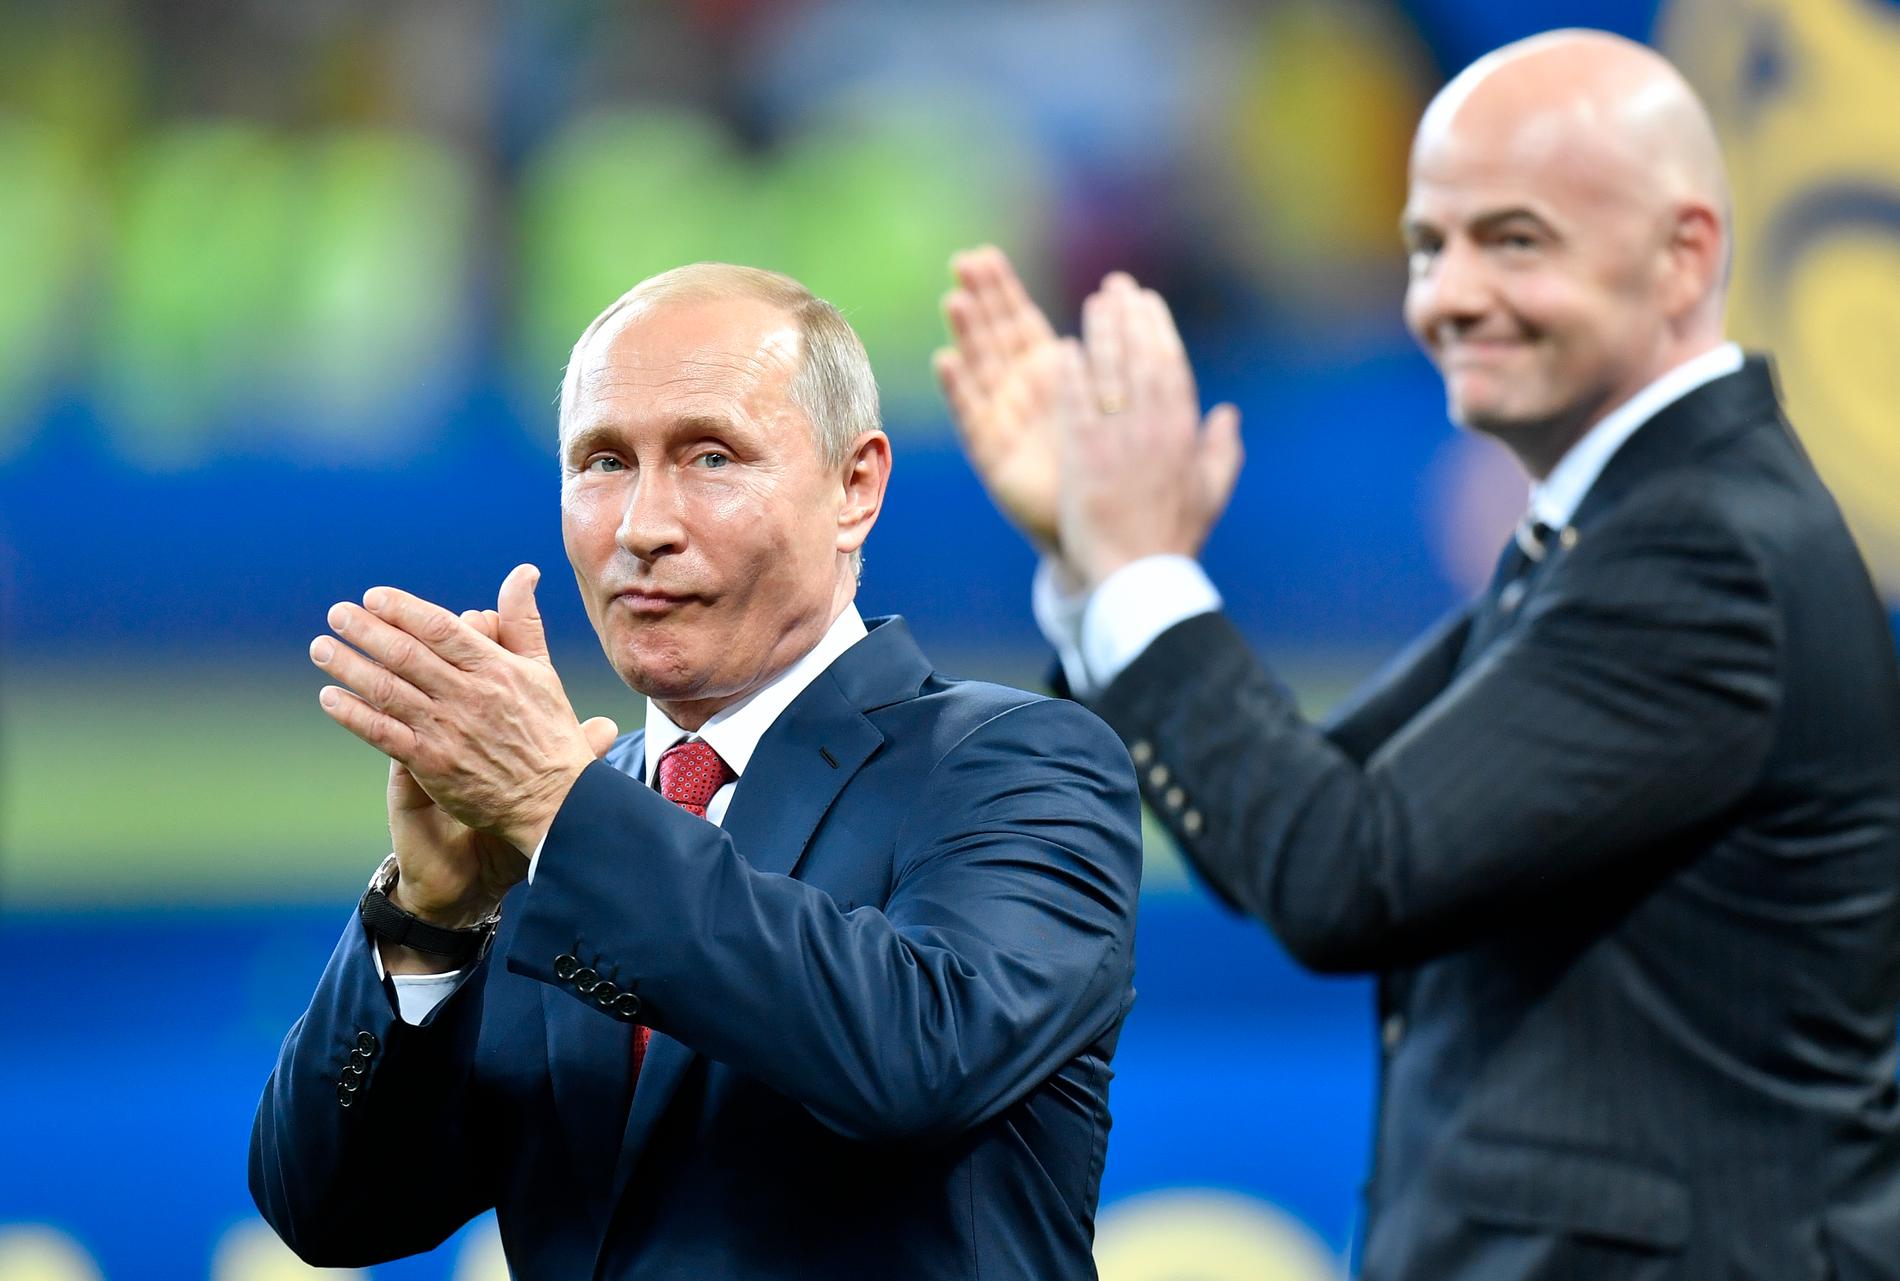 Beweringen dat Rusland nog steeds WK-kwalificatiewedstrijden kan spelen – VG